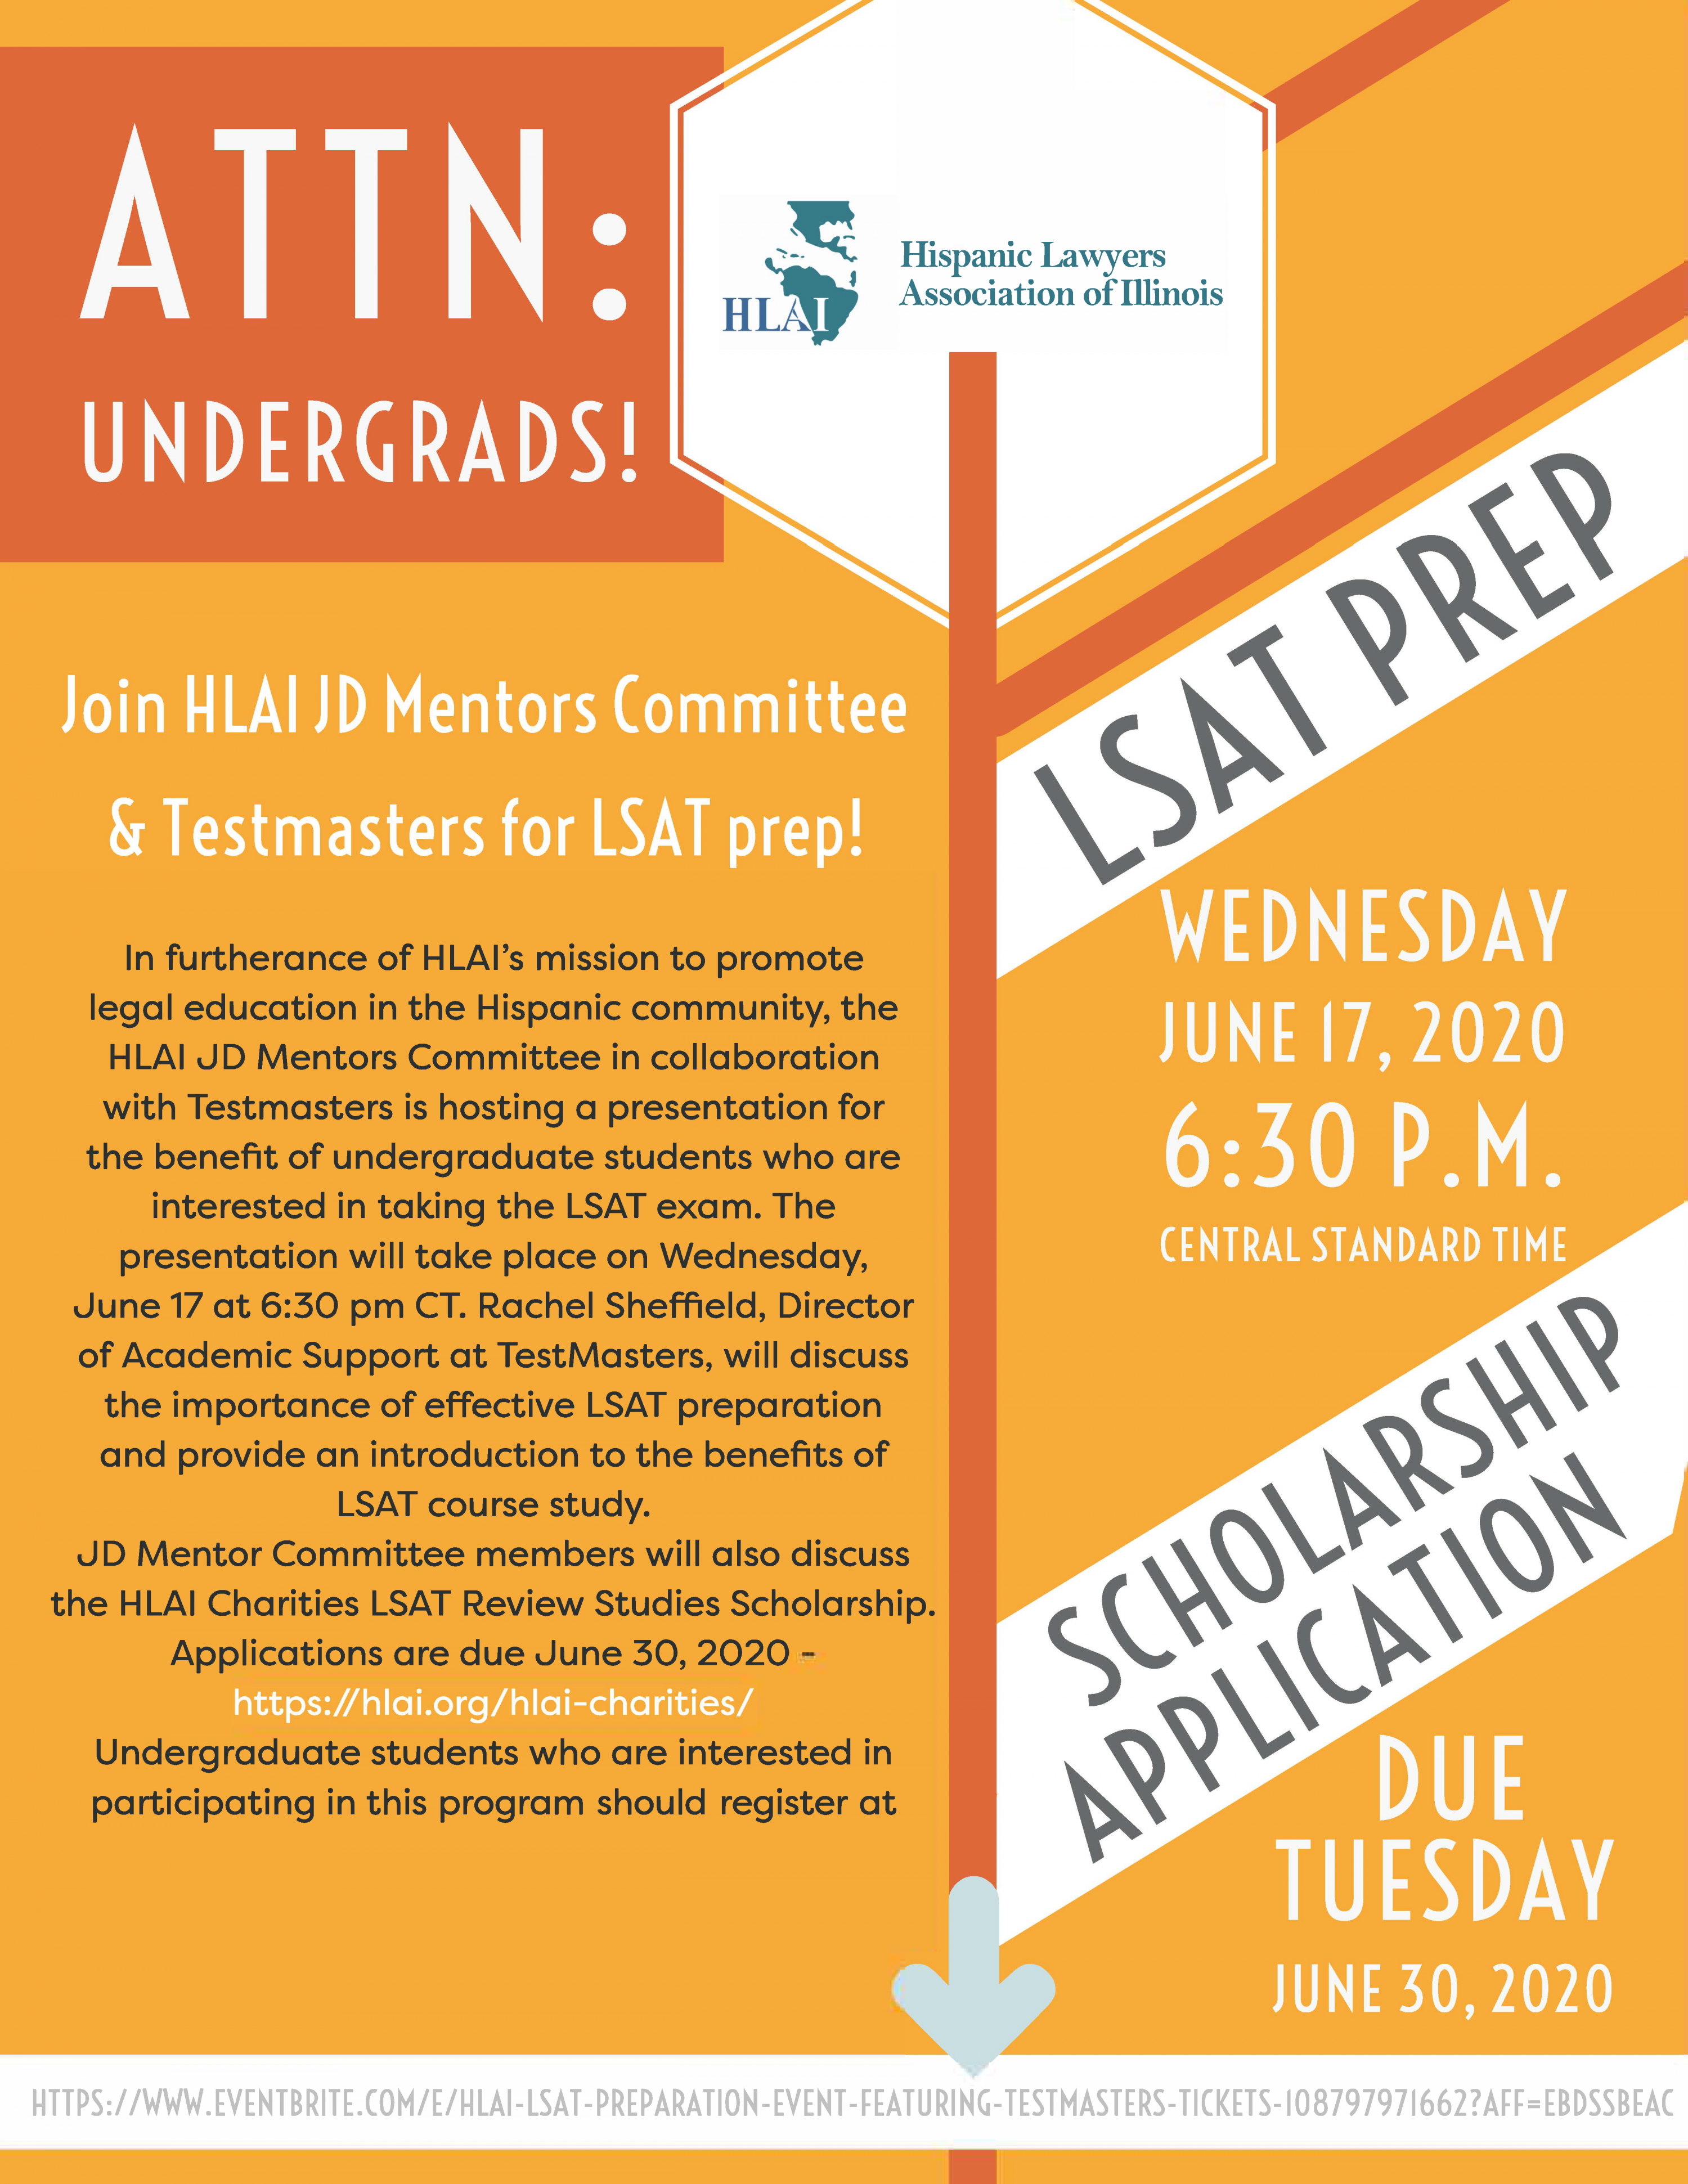 June 17, 2020 – JD Mentors Committee & Testmasters Host LSAT Prep